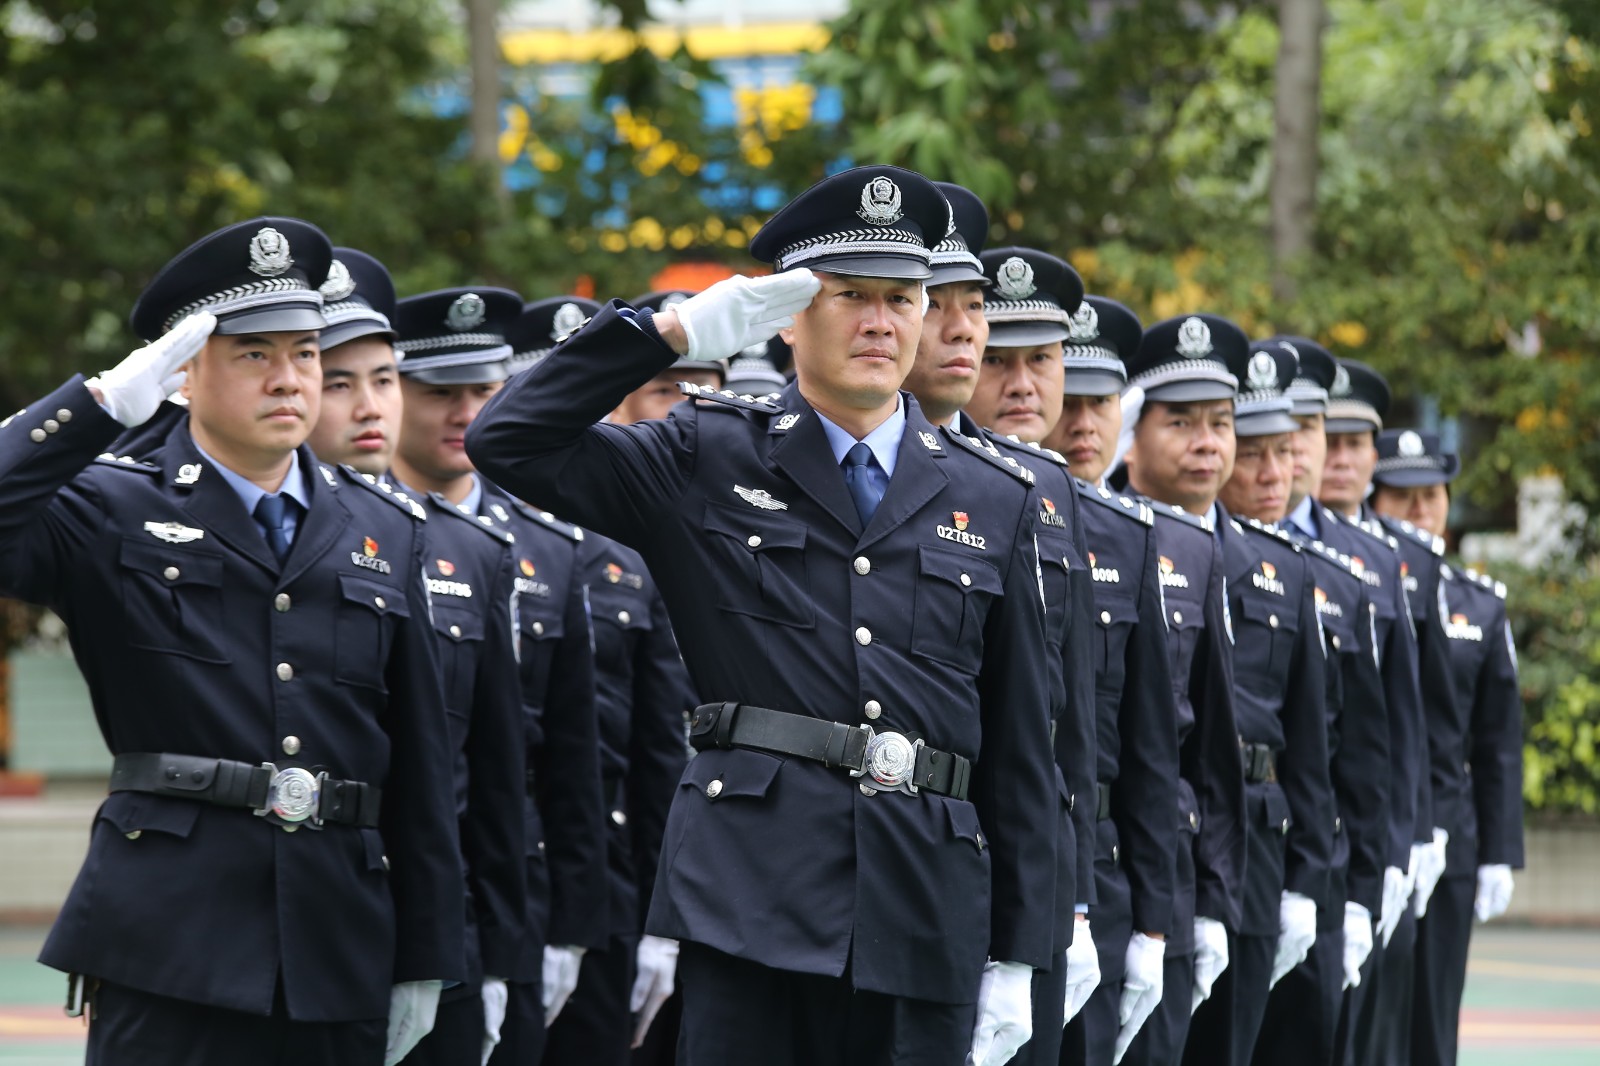 广州警备区警务图片